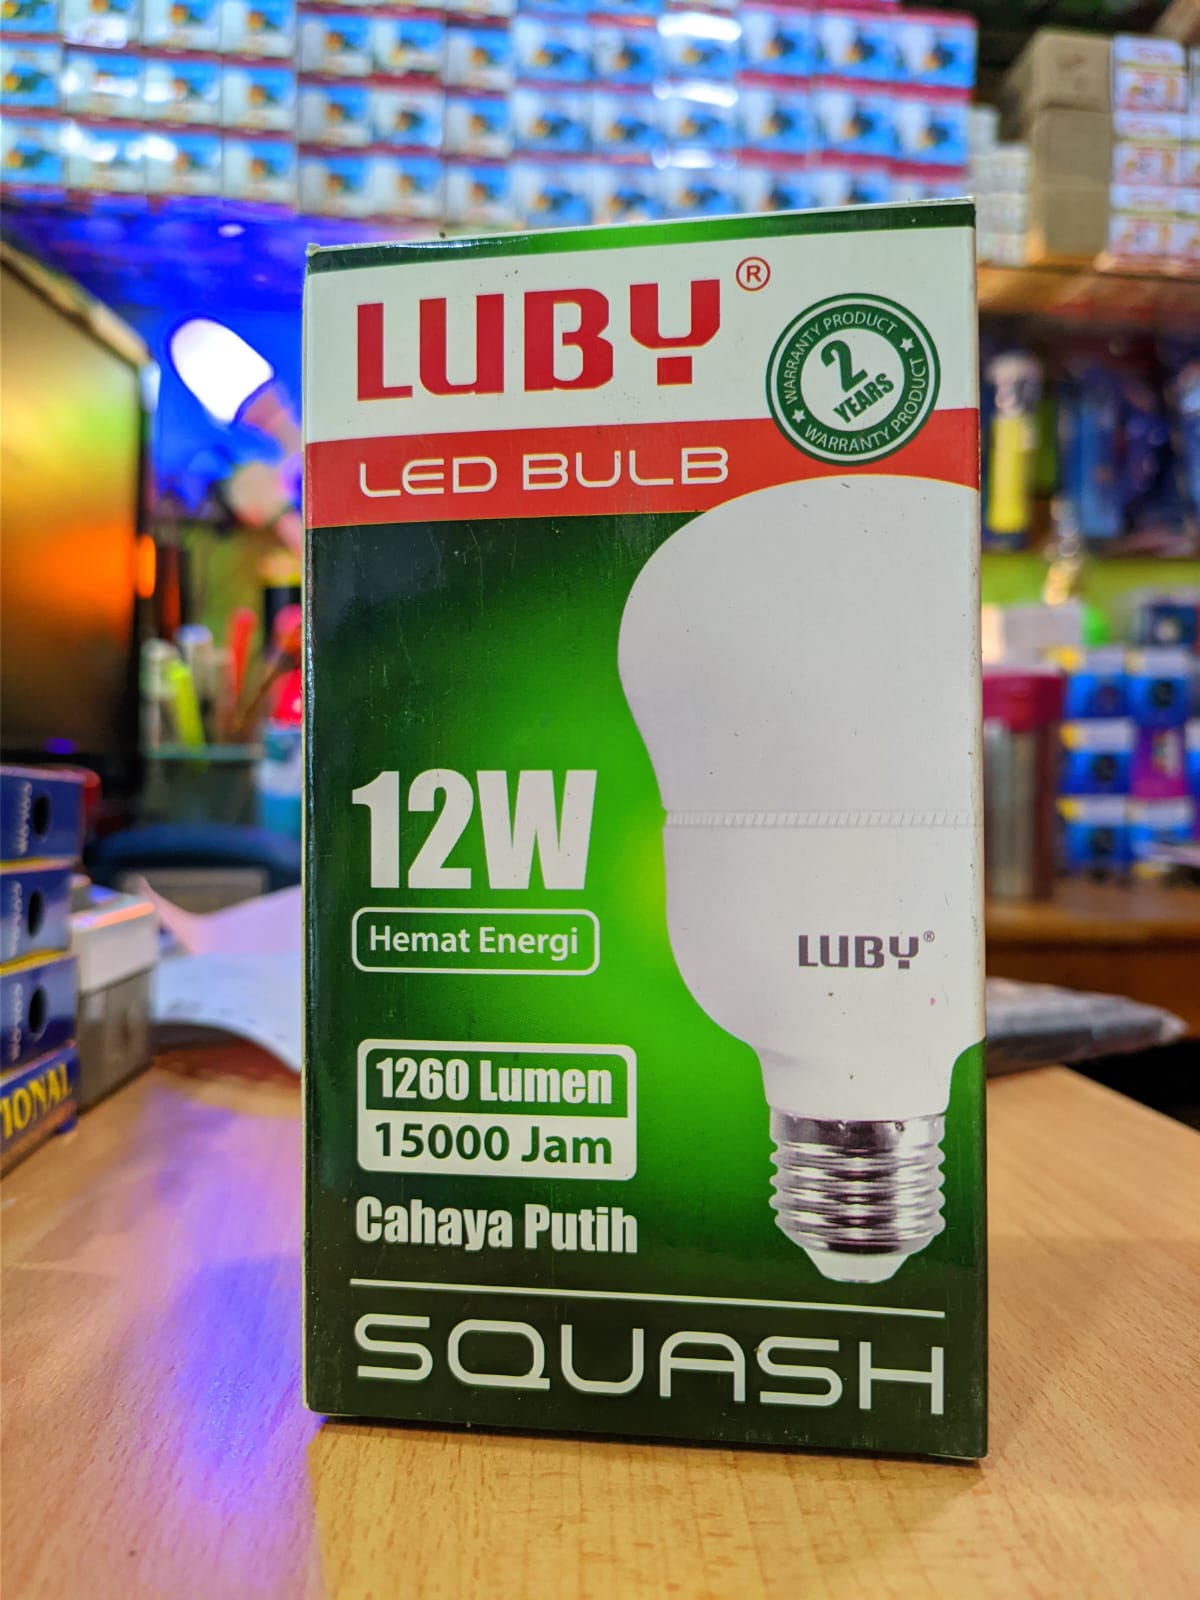 LAMPU LED LUBY SQUASH 12 WATT